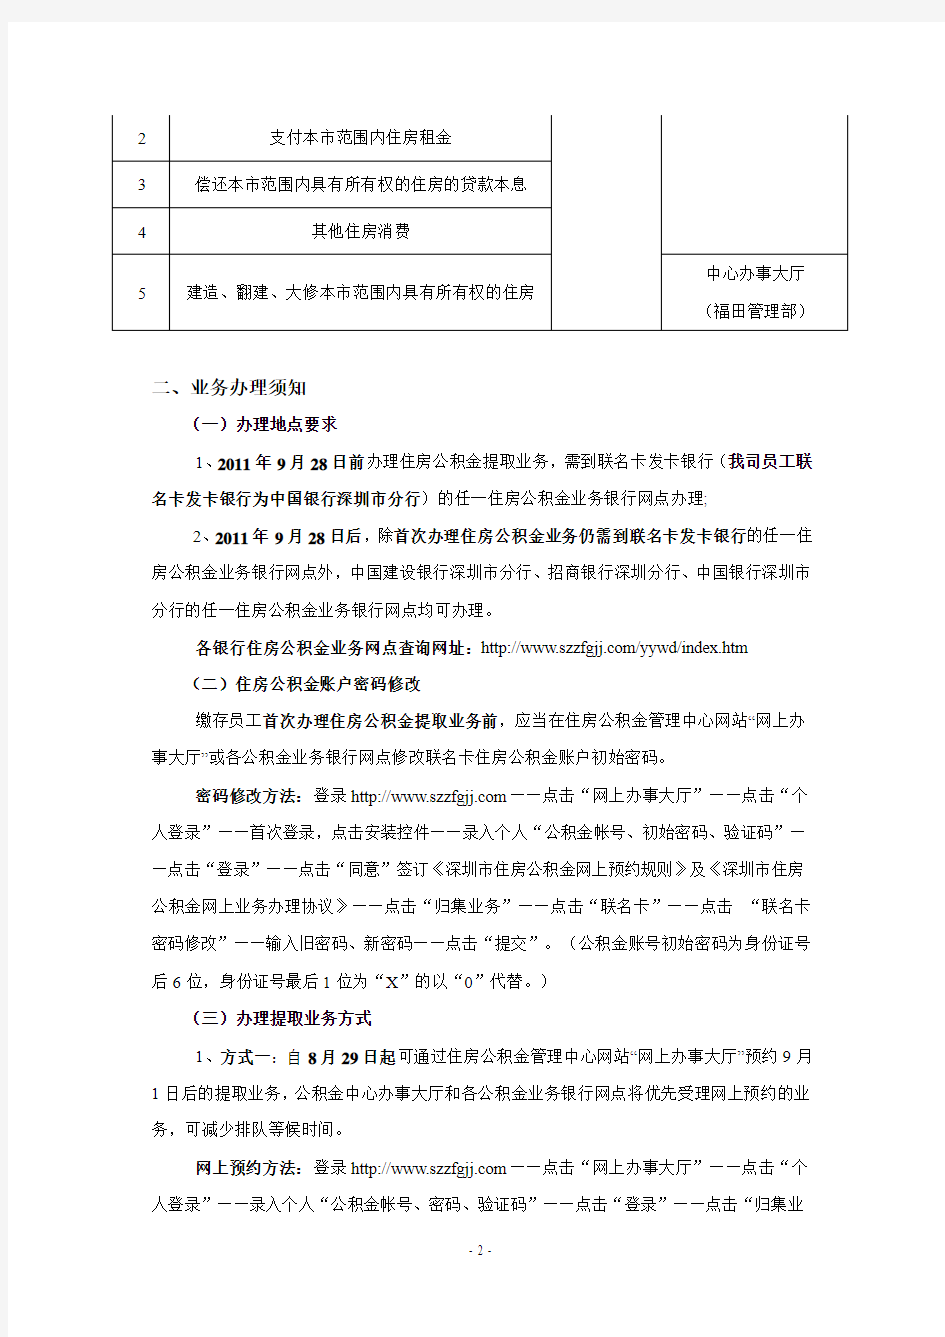 关于深圳市住房公积金提取业务办理的简要介绍